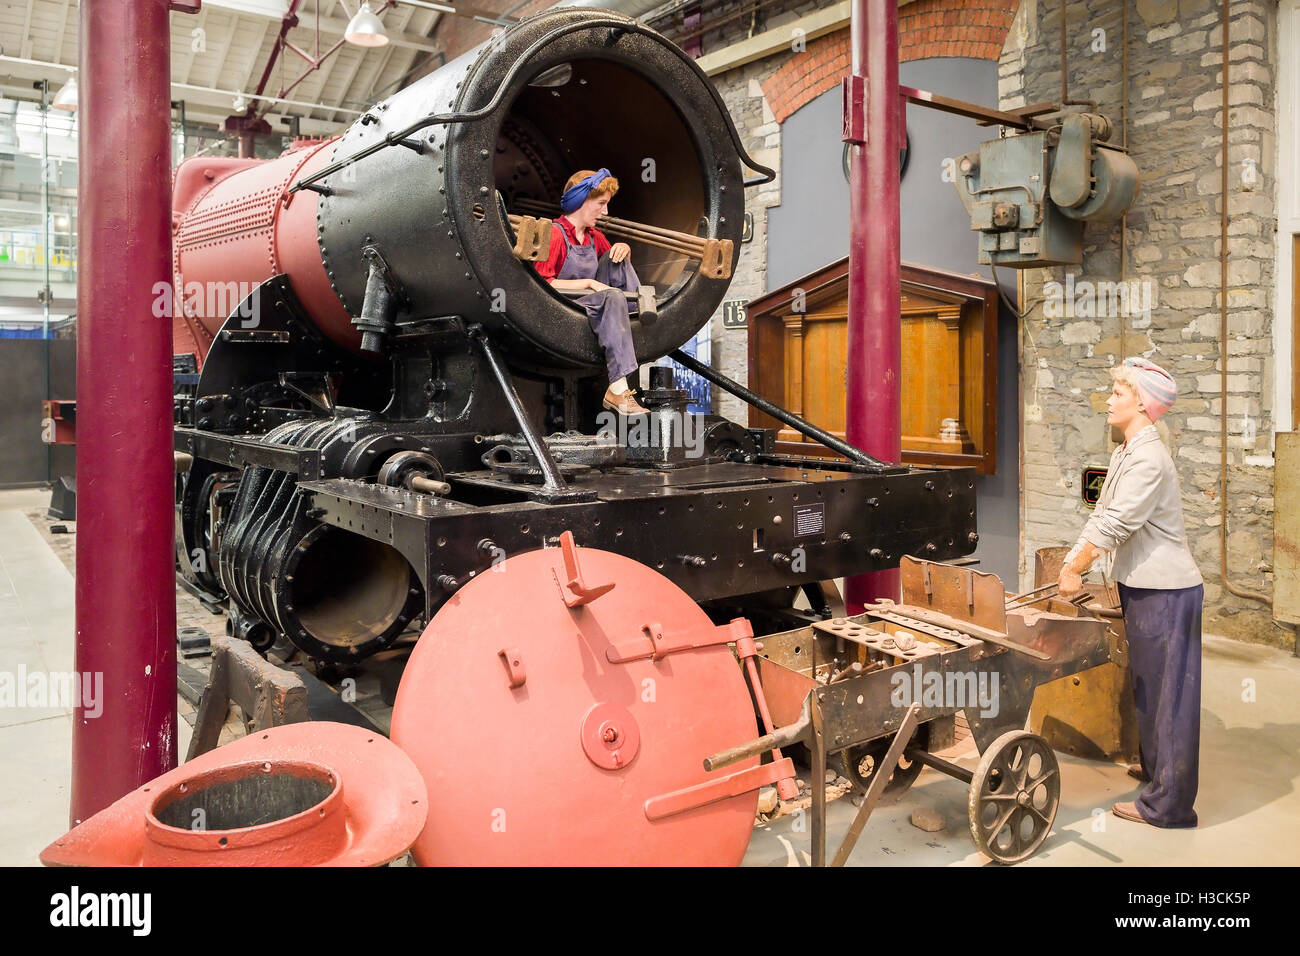 La DEUXIÈME GUERRE MONDIALE, les femmes travaillant dans le magasin où la chaudière GWR railway locomotives à vapeur ont été conçus et construits à Swindon UK Banque D'Images